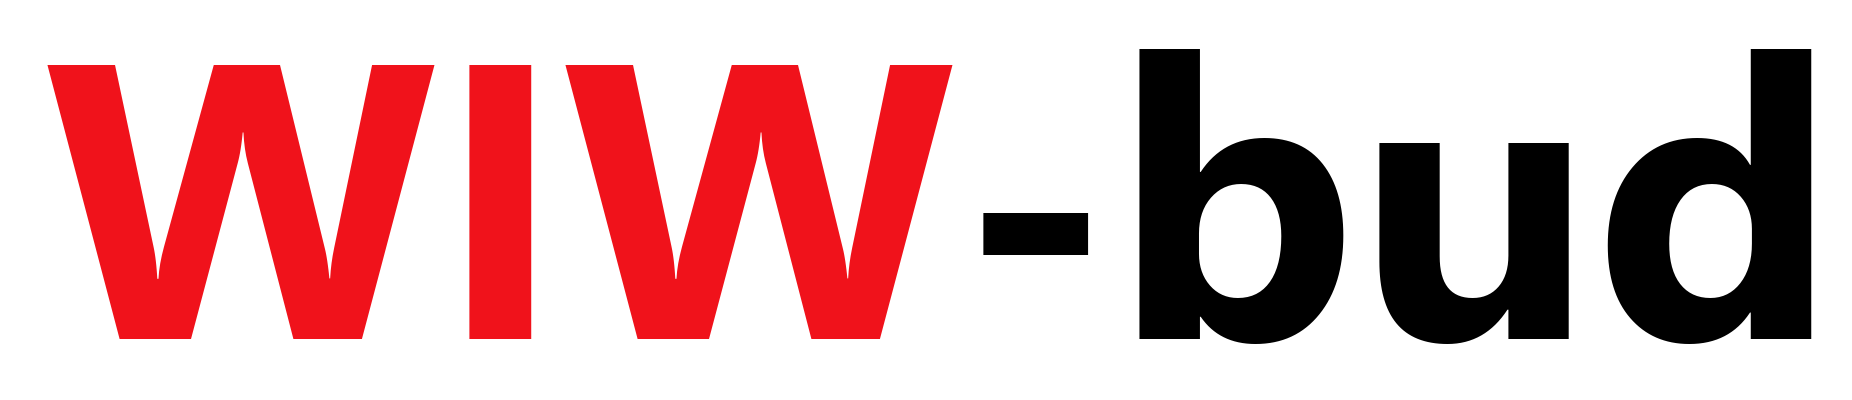 Logo Wiw Bud. FHU. Raus & Żołyniak sp.j.